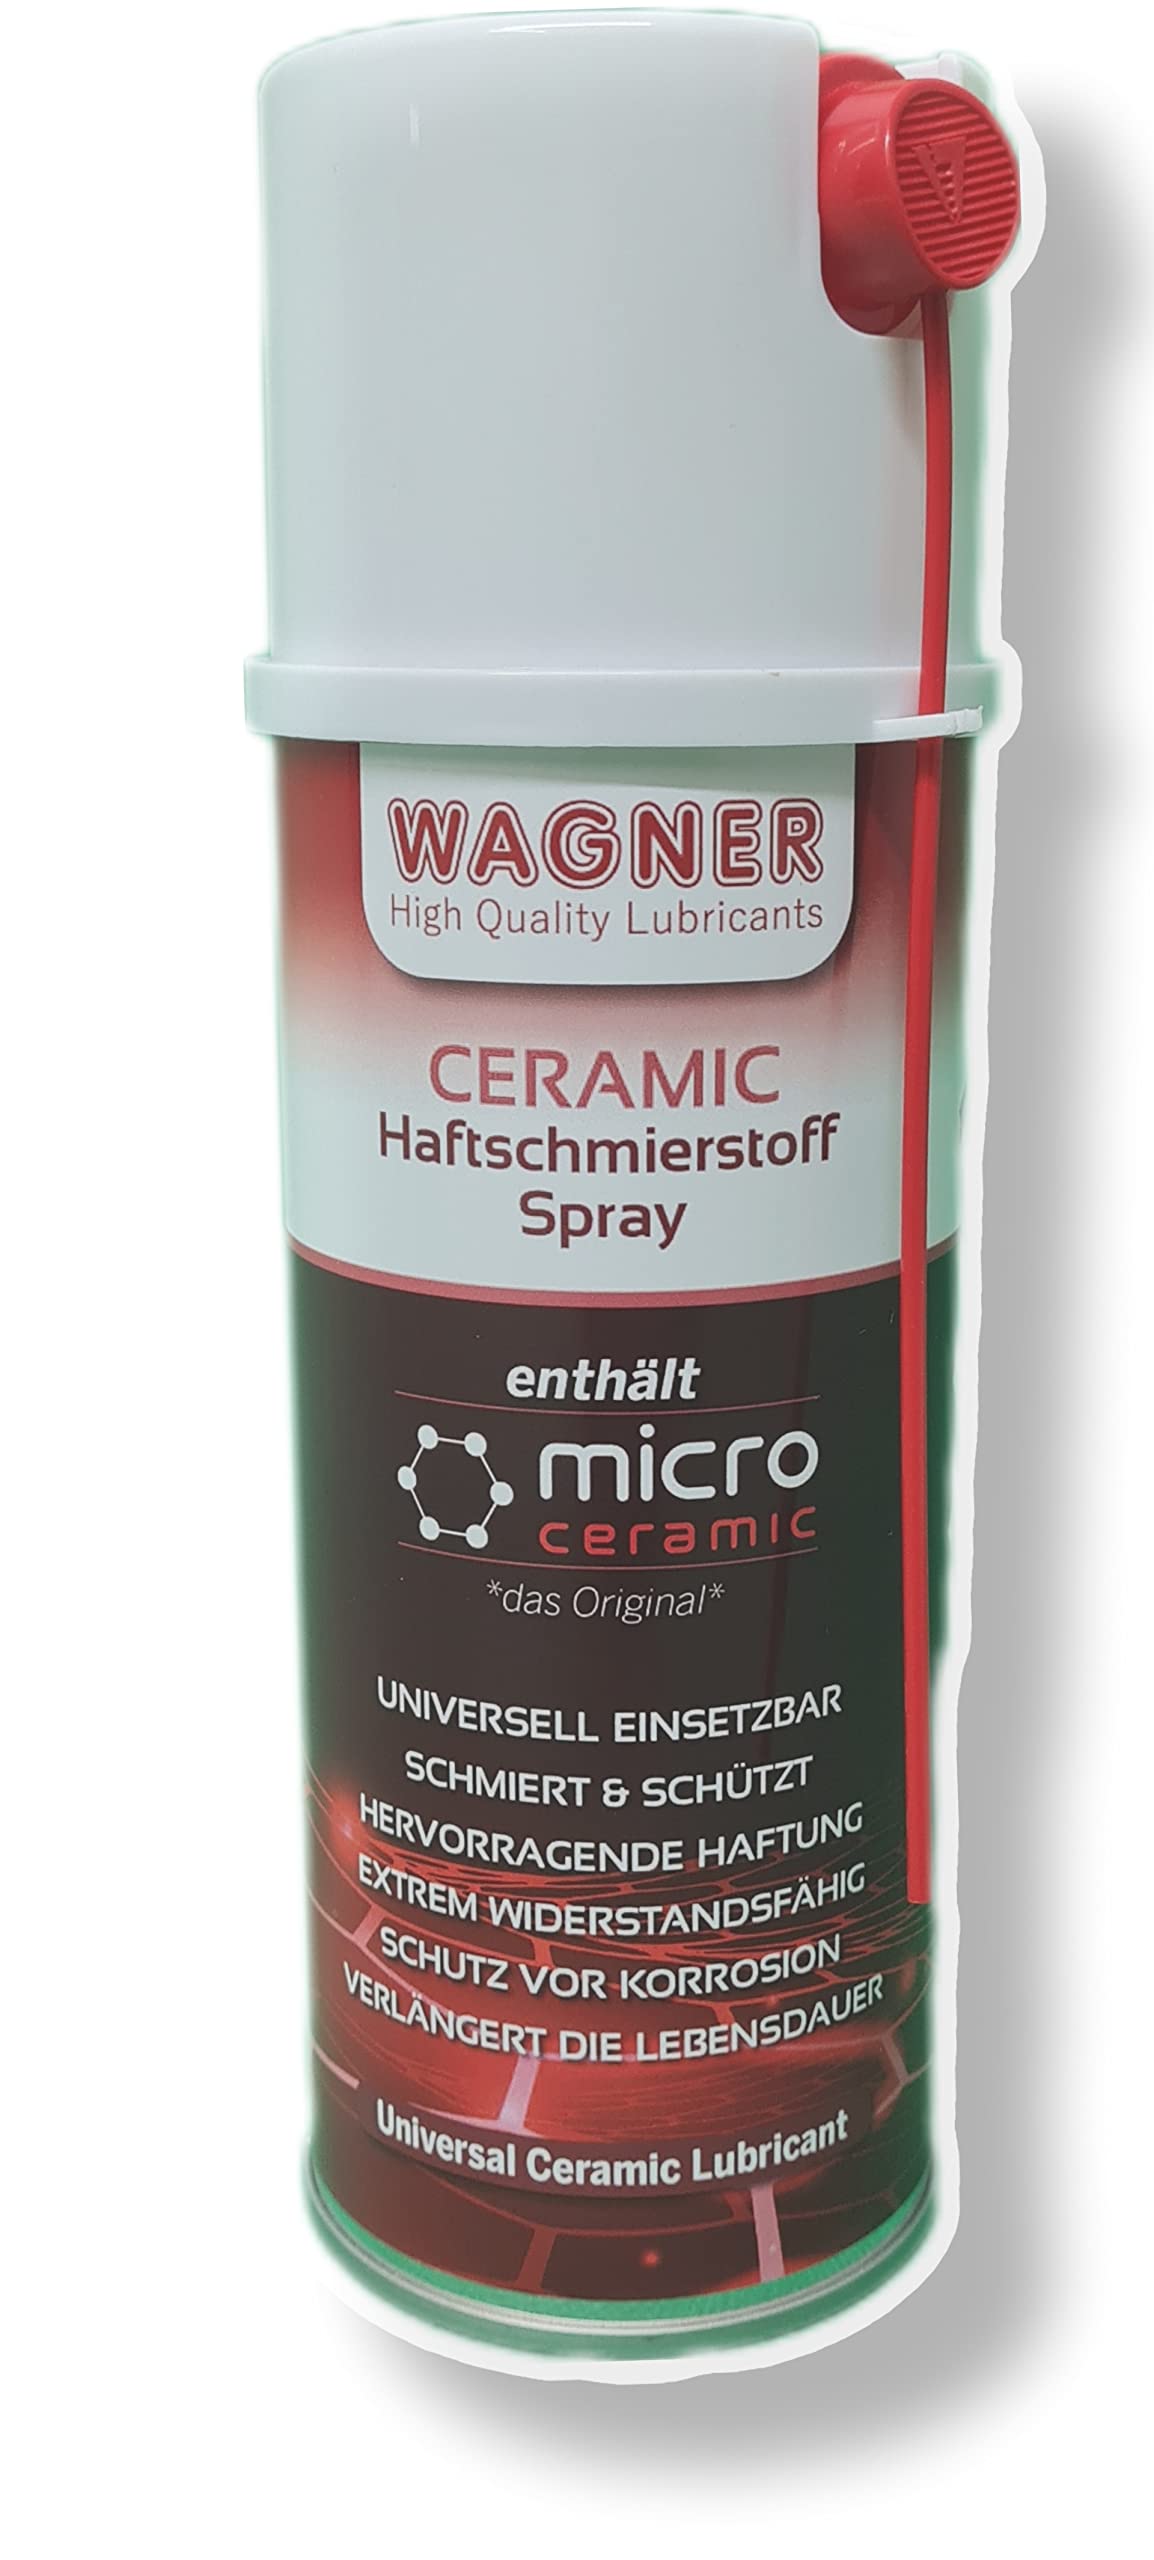 Wagner Ceramic Haftschmierstoff-Spray – 191200 – 200 ml von WAGNER Spezialschmierstoffe GmbH & Co. KG